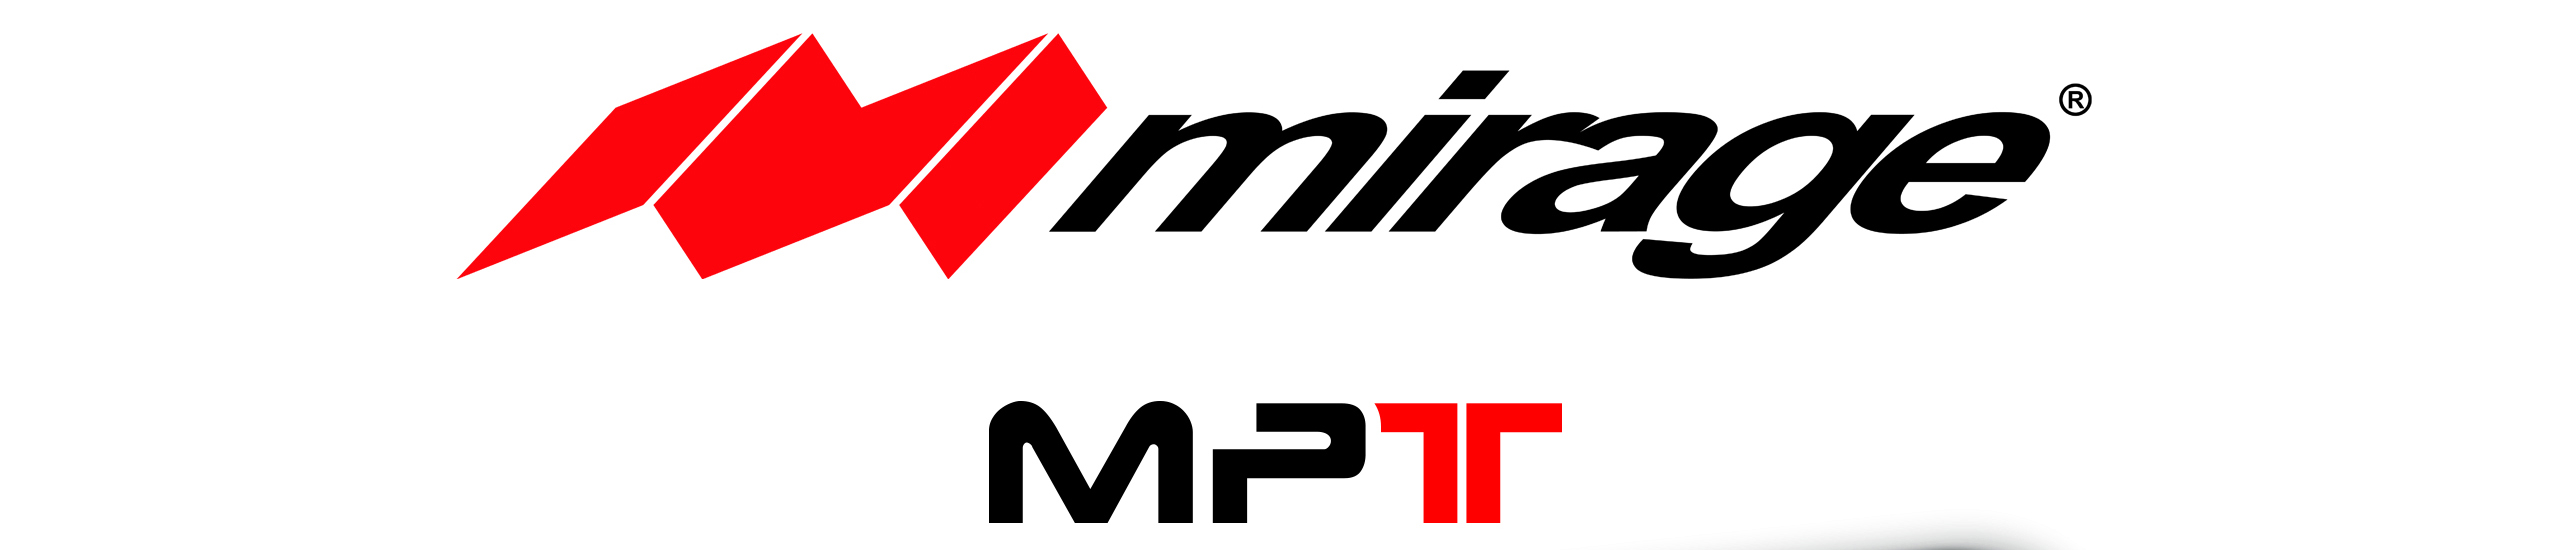 Nuevo Minisplit Mirage MPT